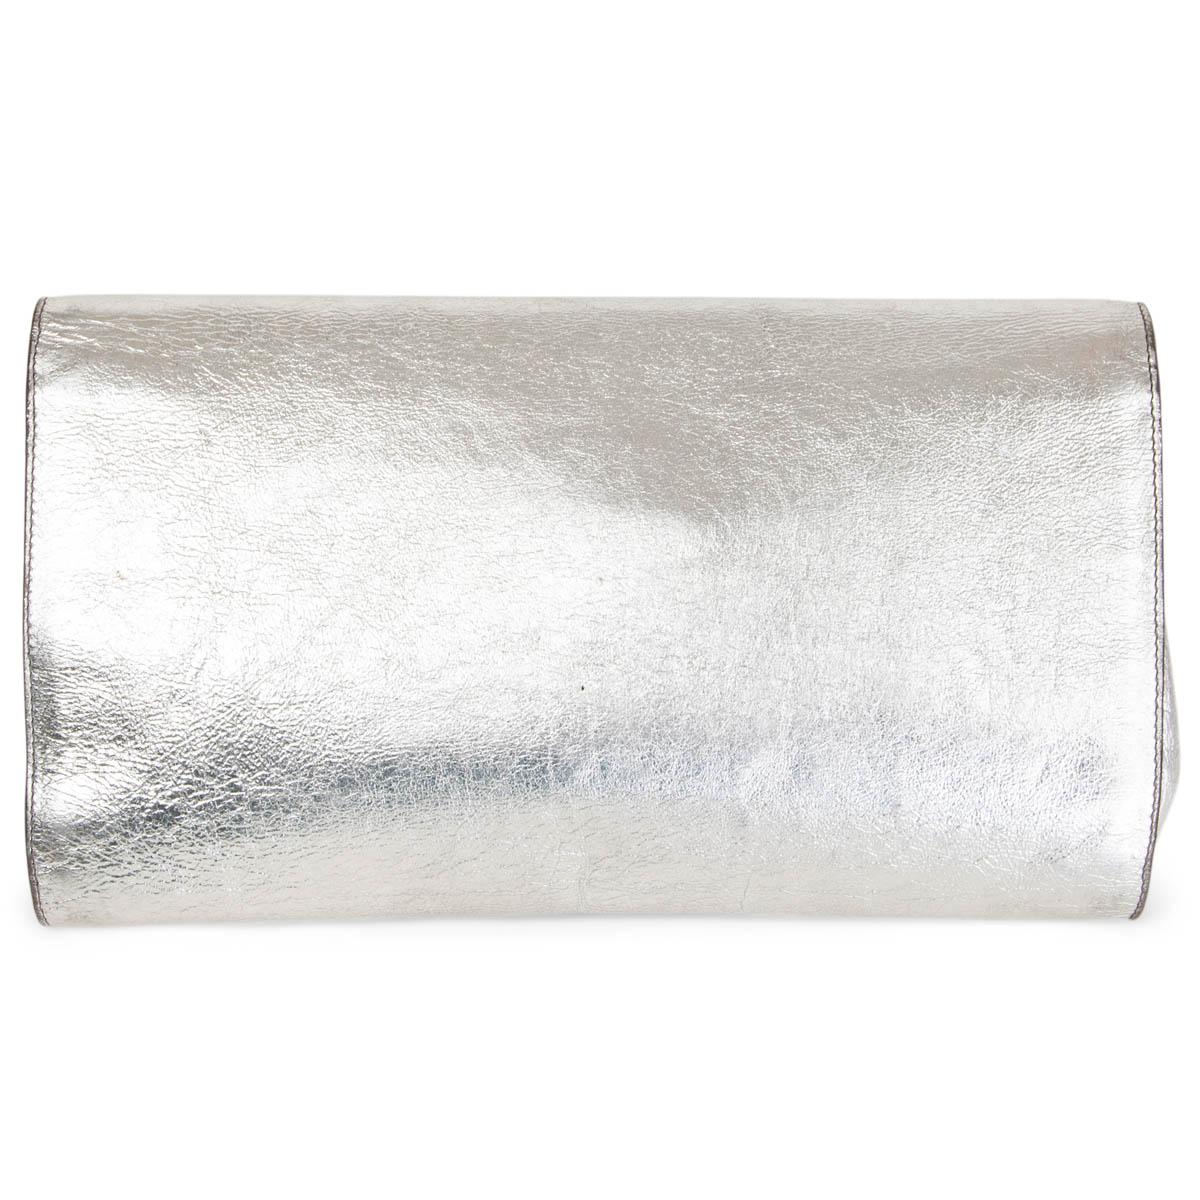 ysl silver clutch bag